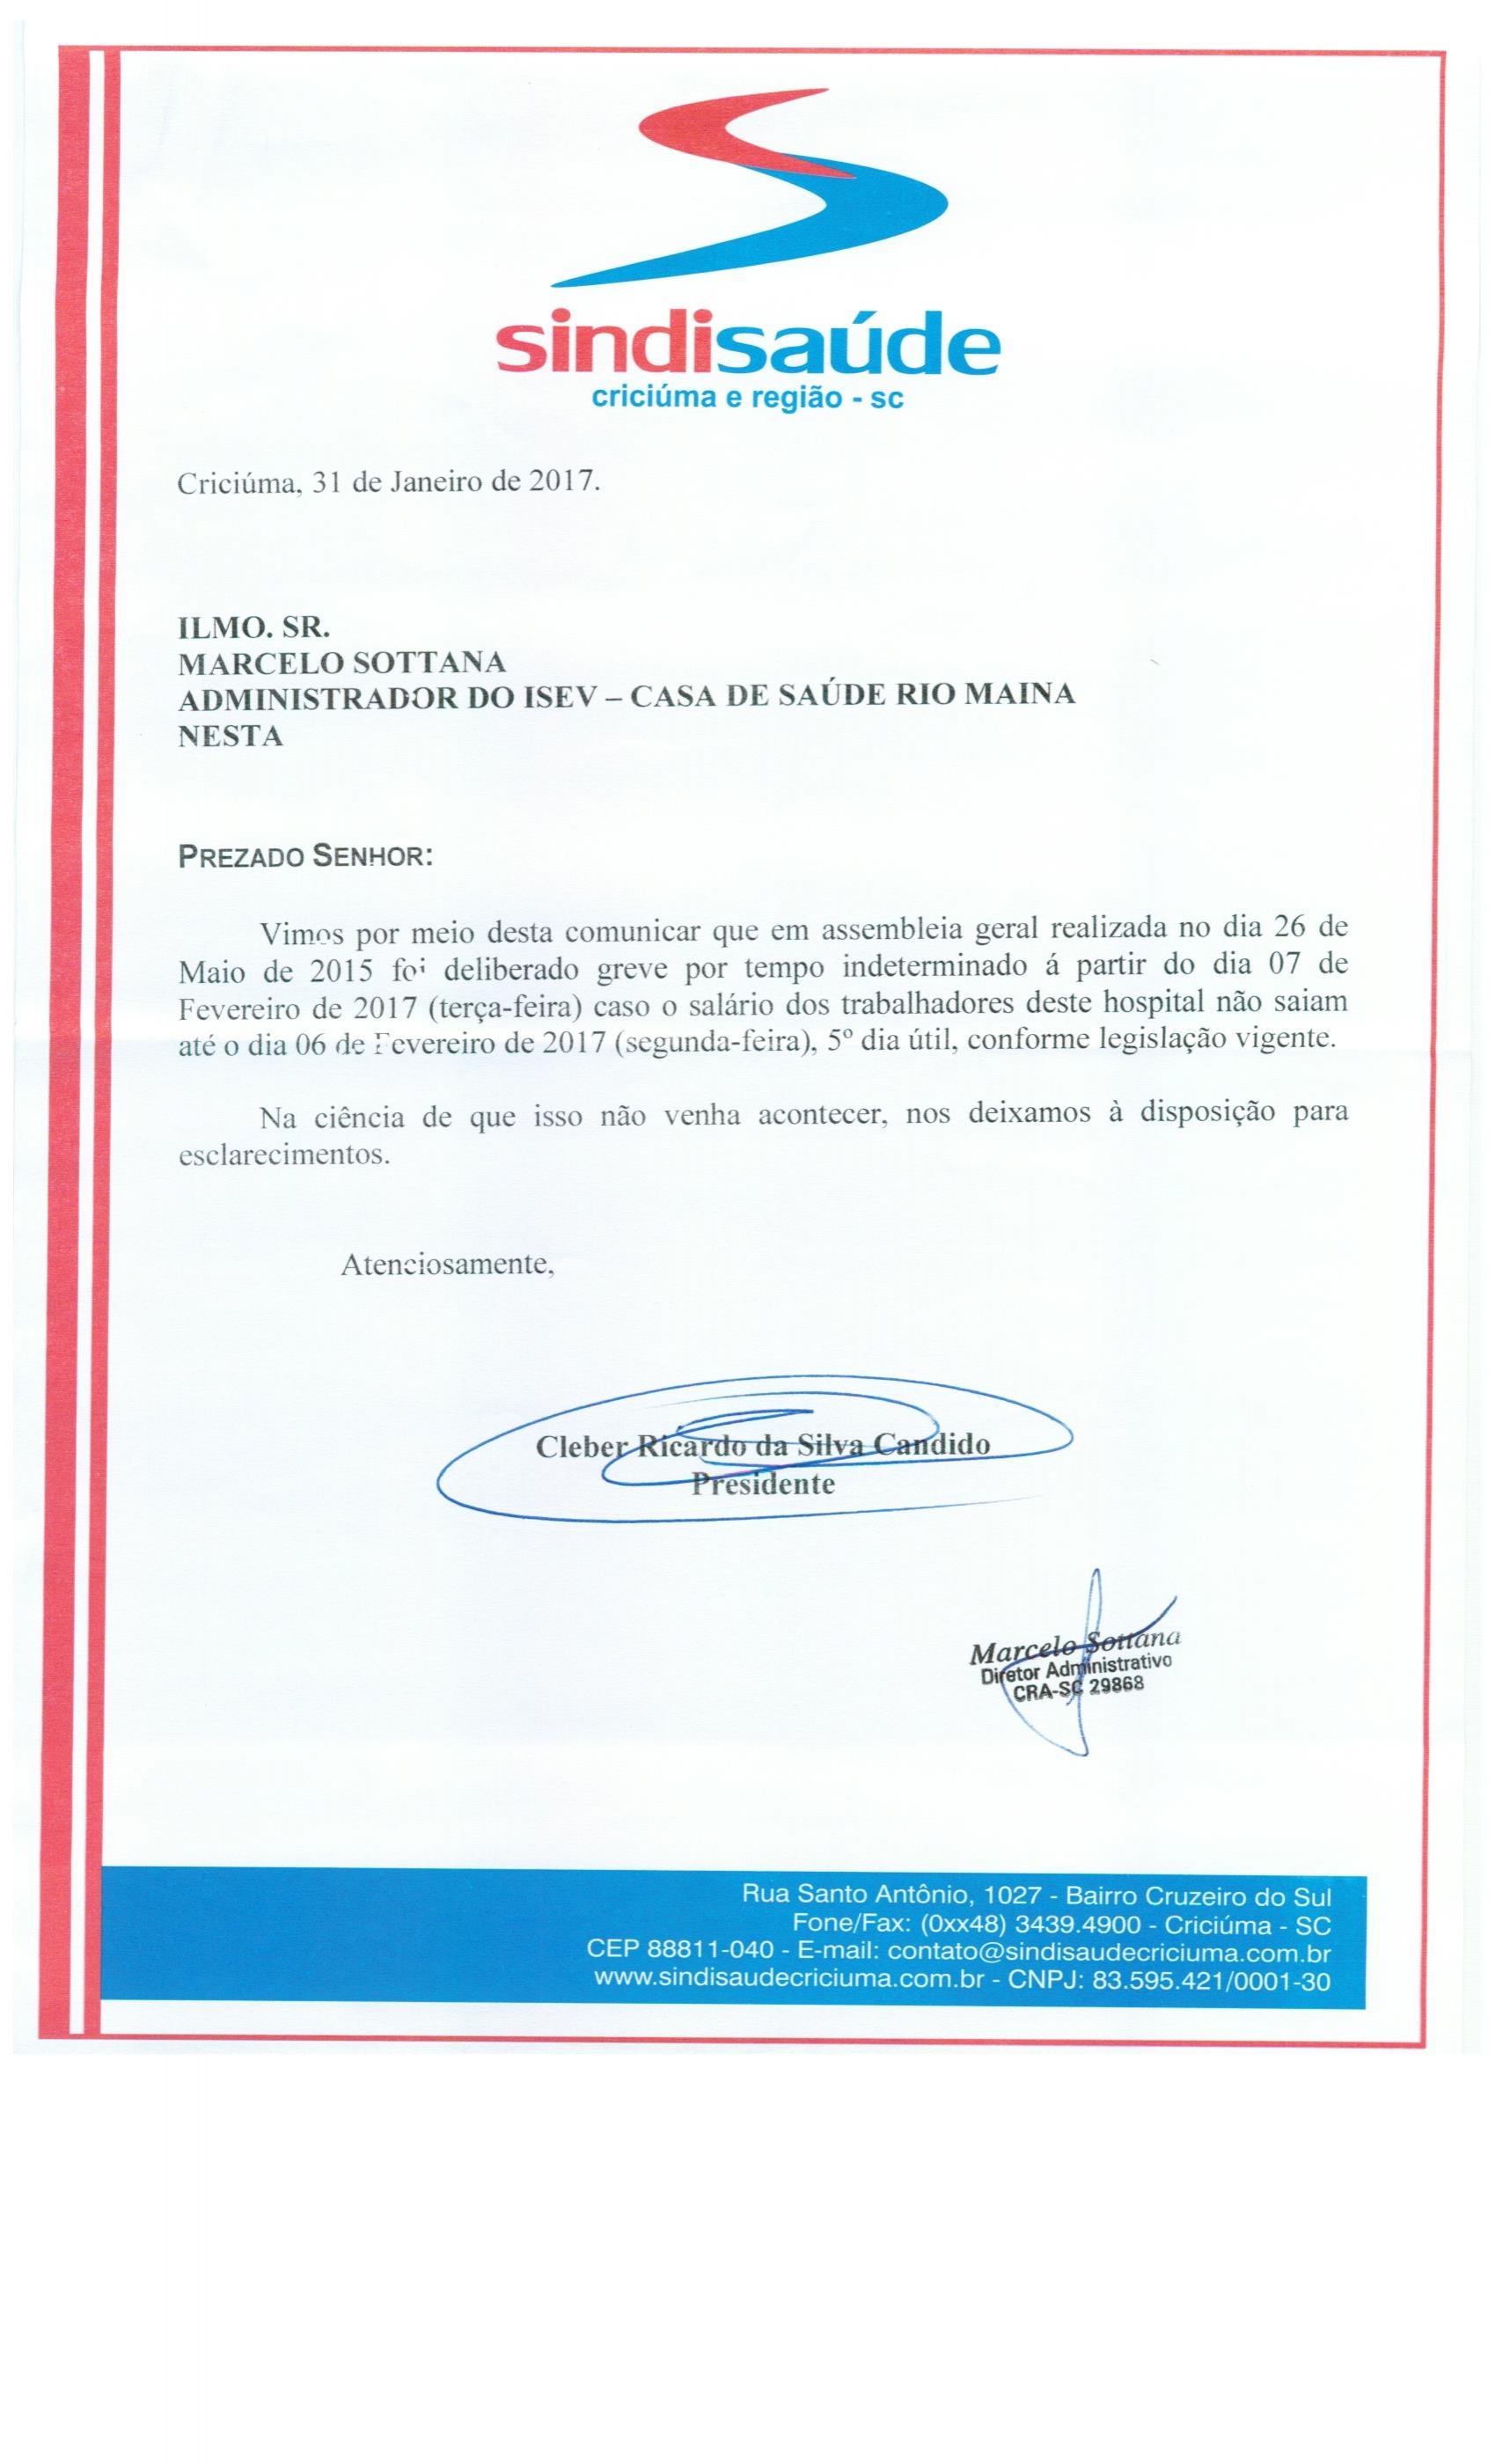 OFÍCIO COMUNICAÇÃO DE GREVE POR ATRASO DE SALÁRIOS ISEV - C.S.R.M.